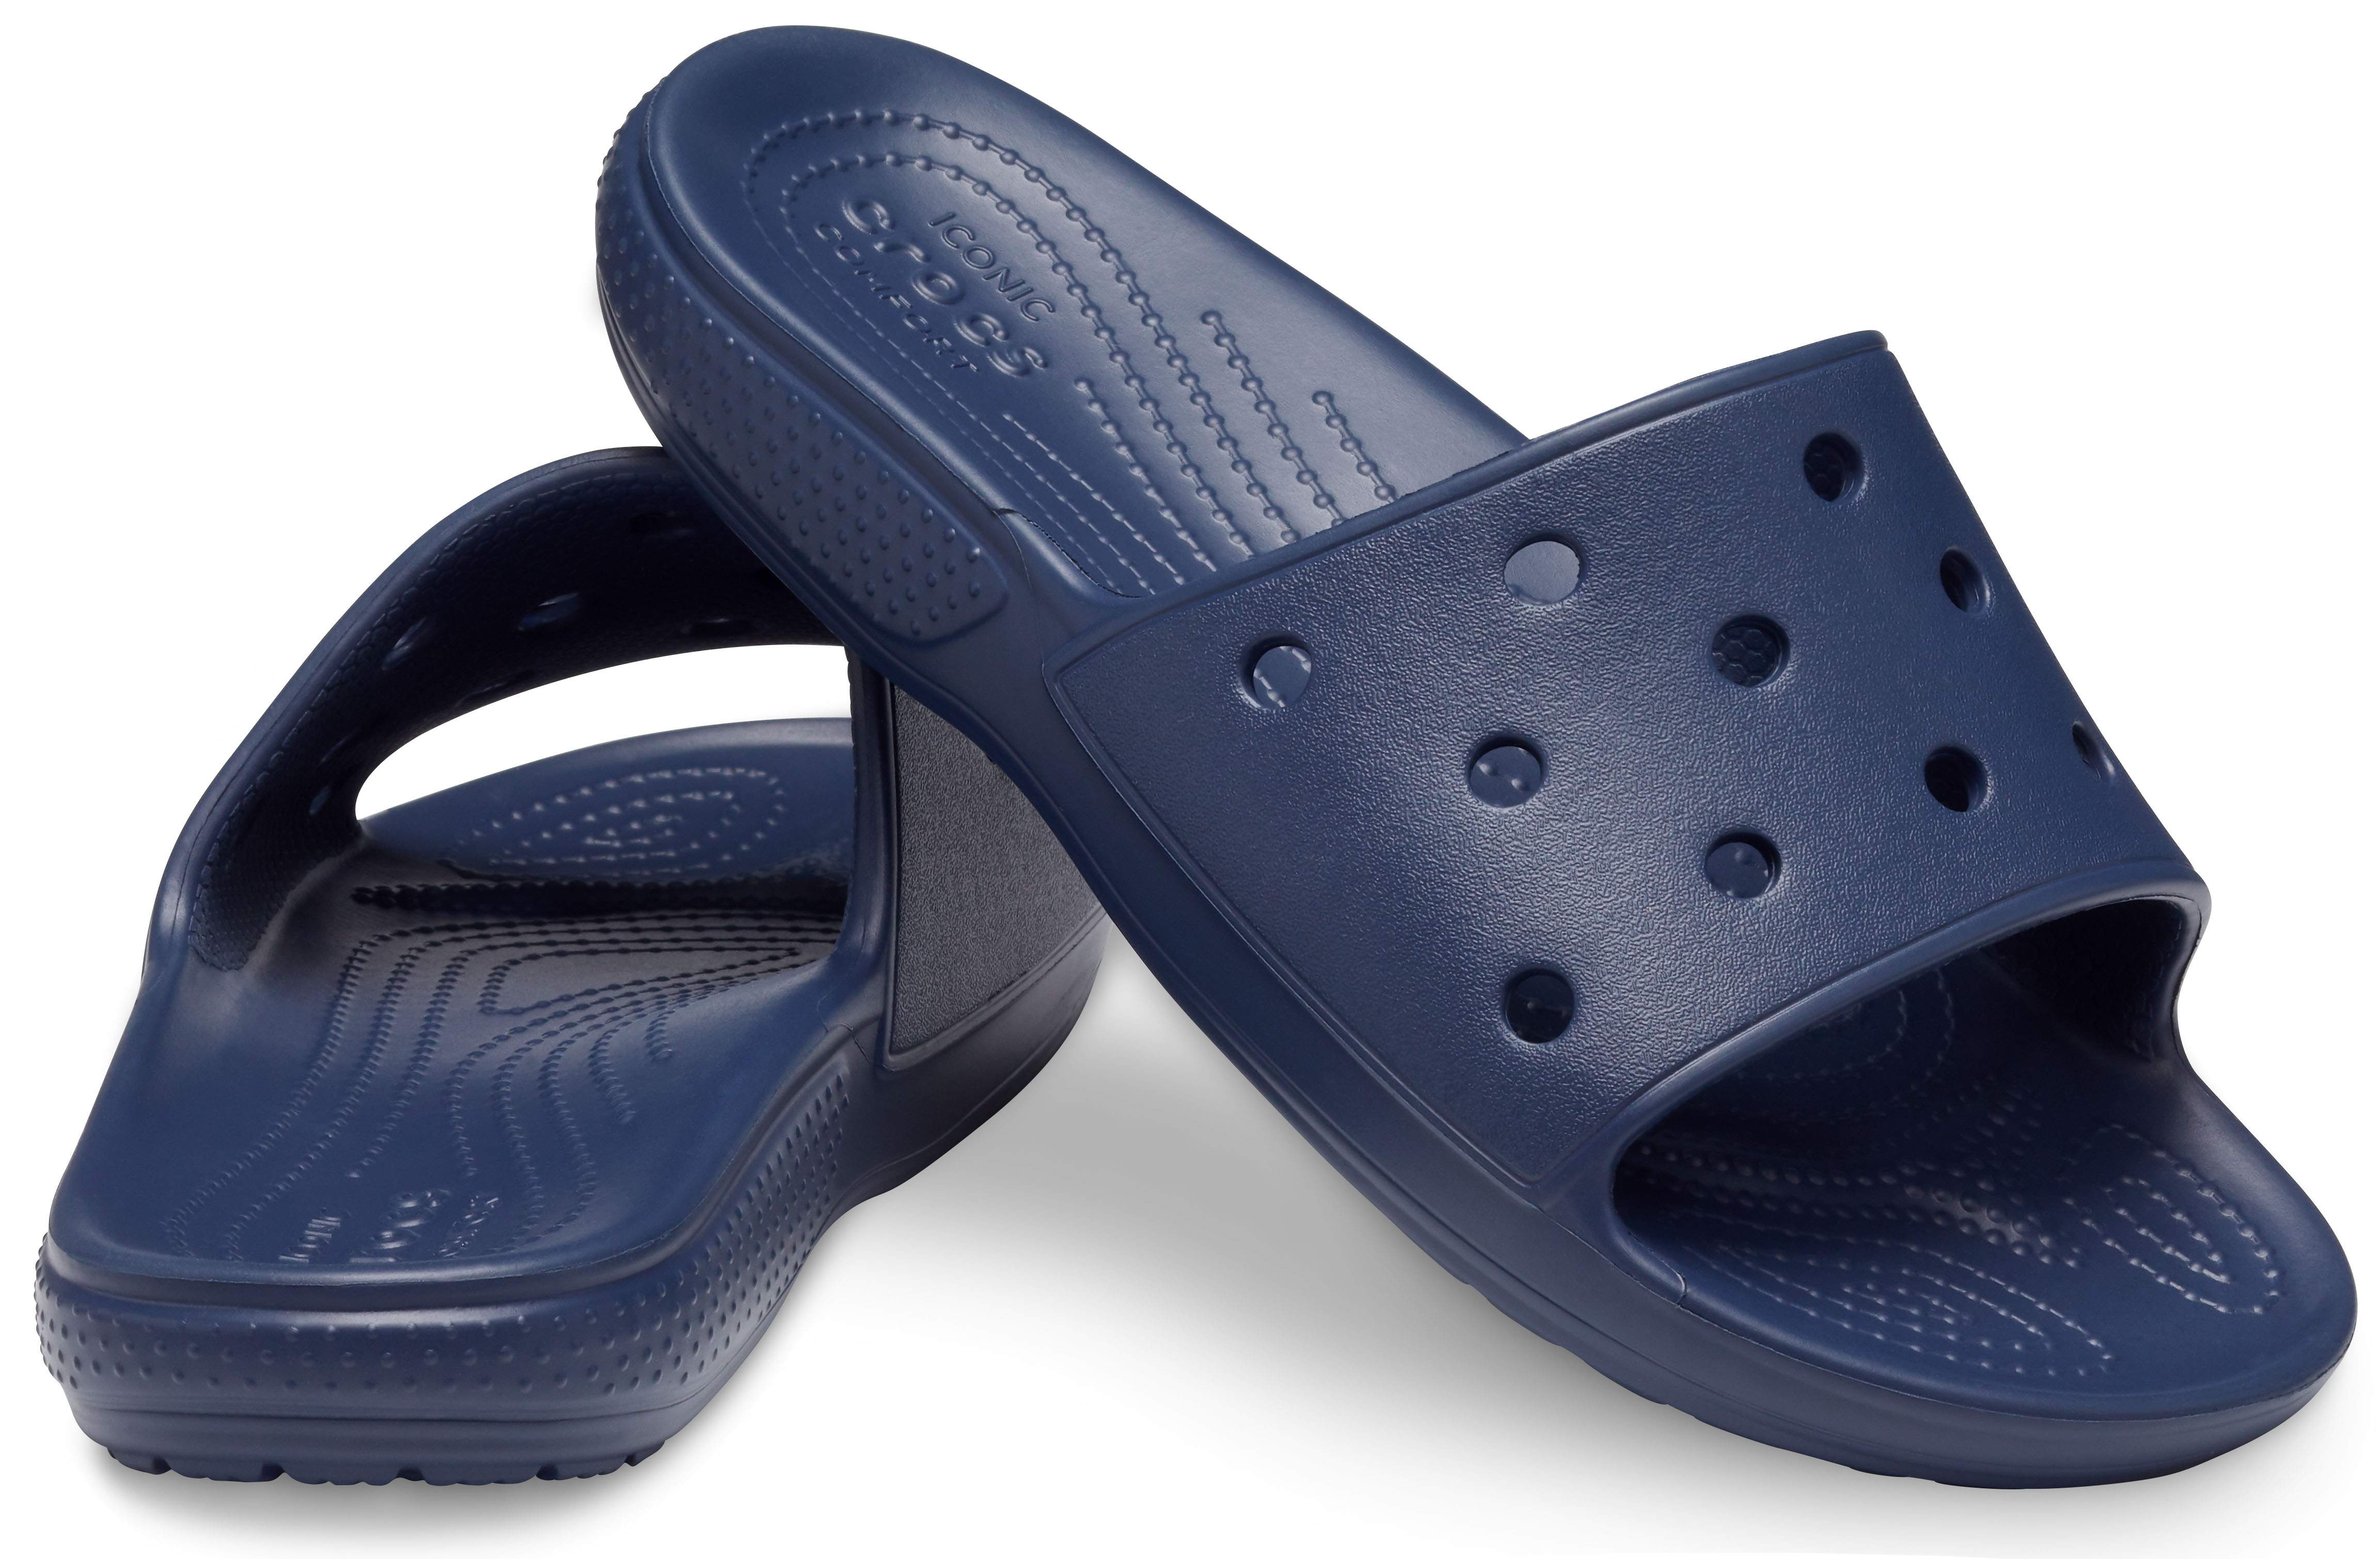 crocs adult classic slide